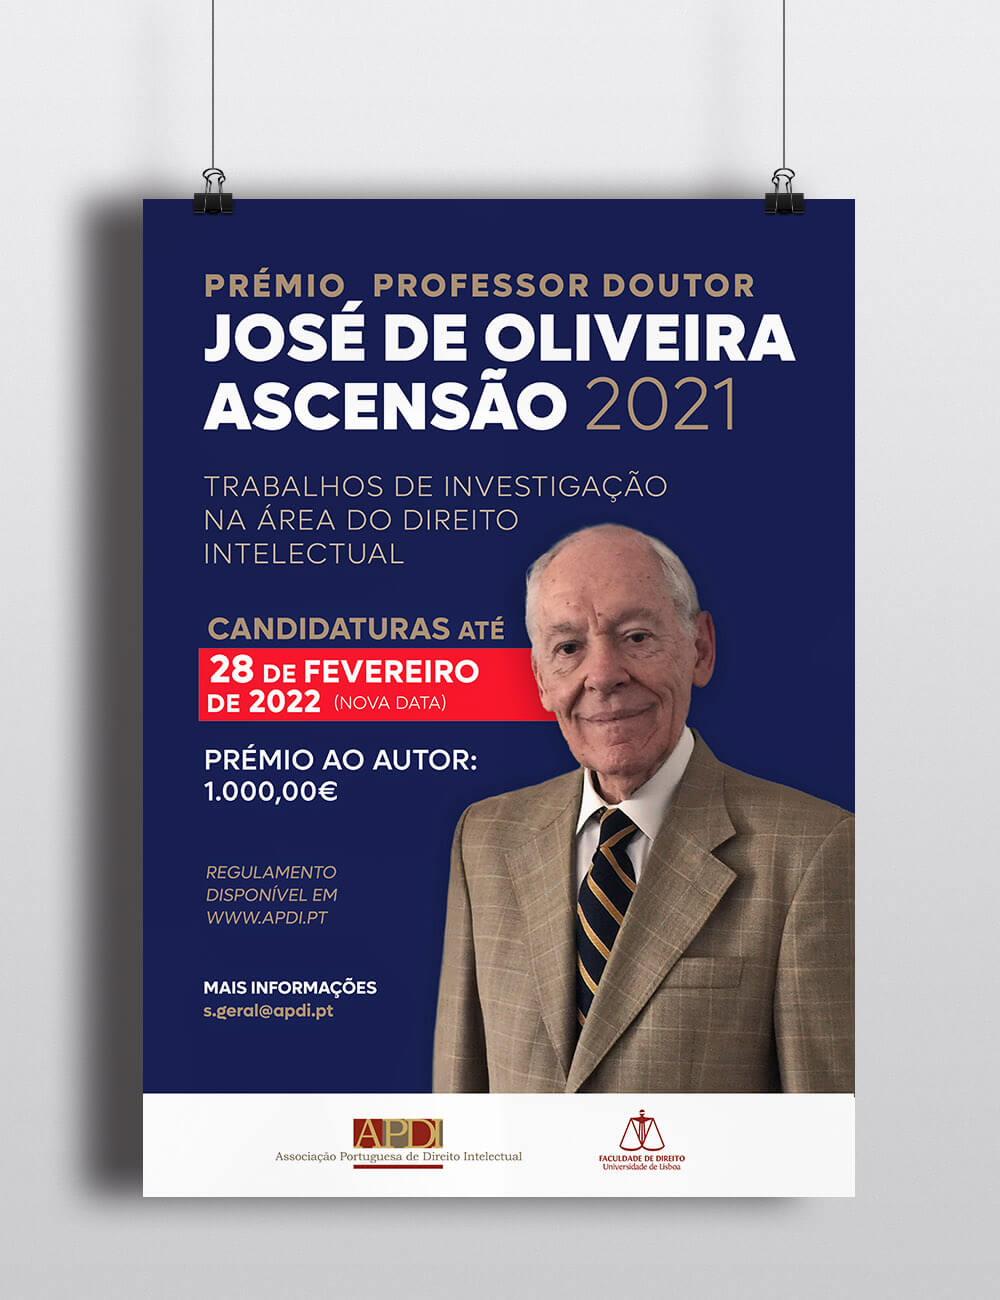 PRÉMIO PROFESSOR DOUTOR JOSÉ DE OLIVEIRA ASCENSÃO 2021